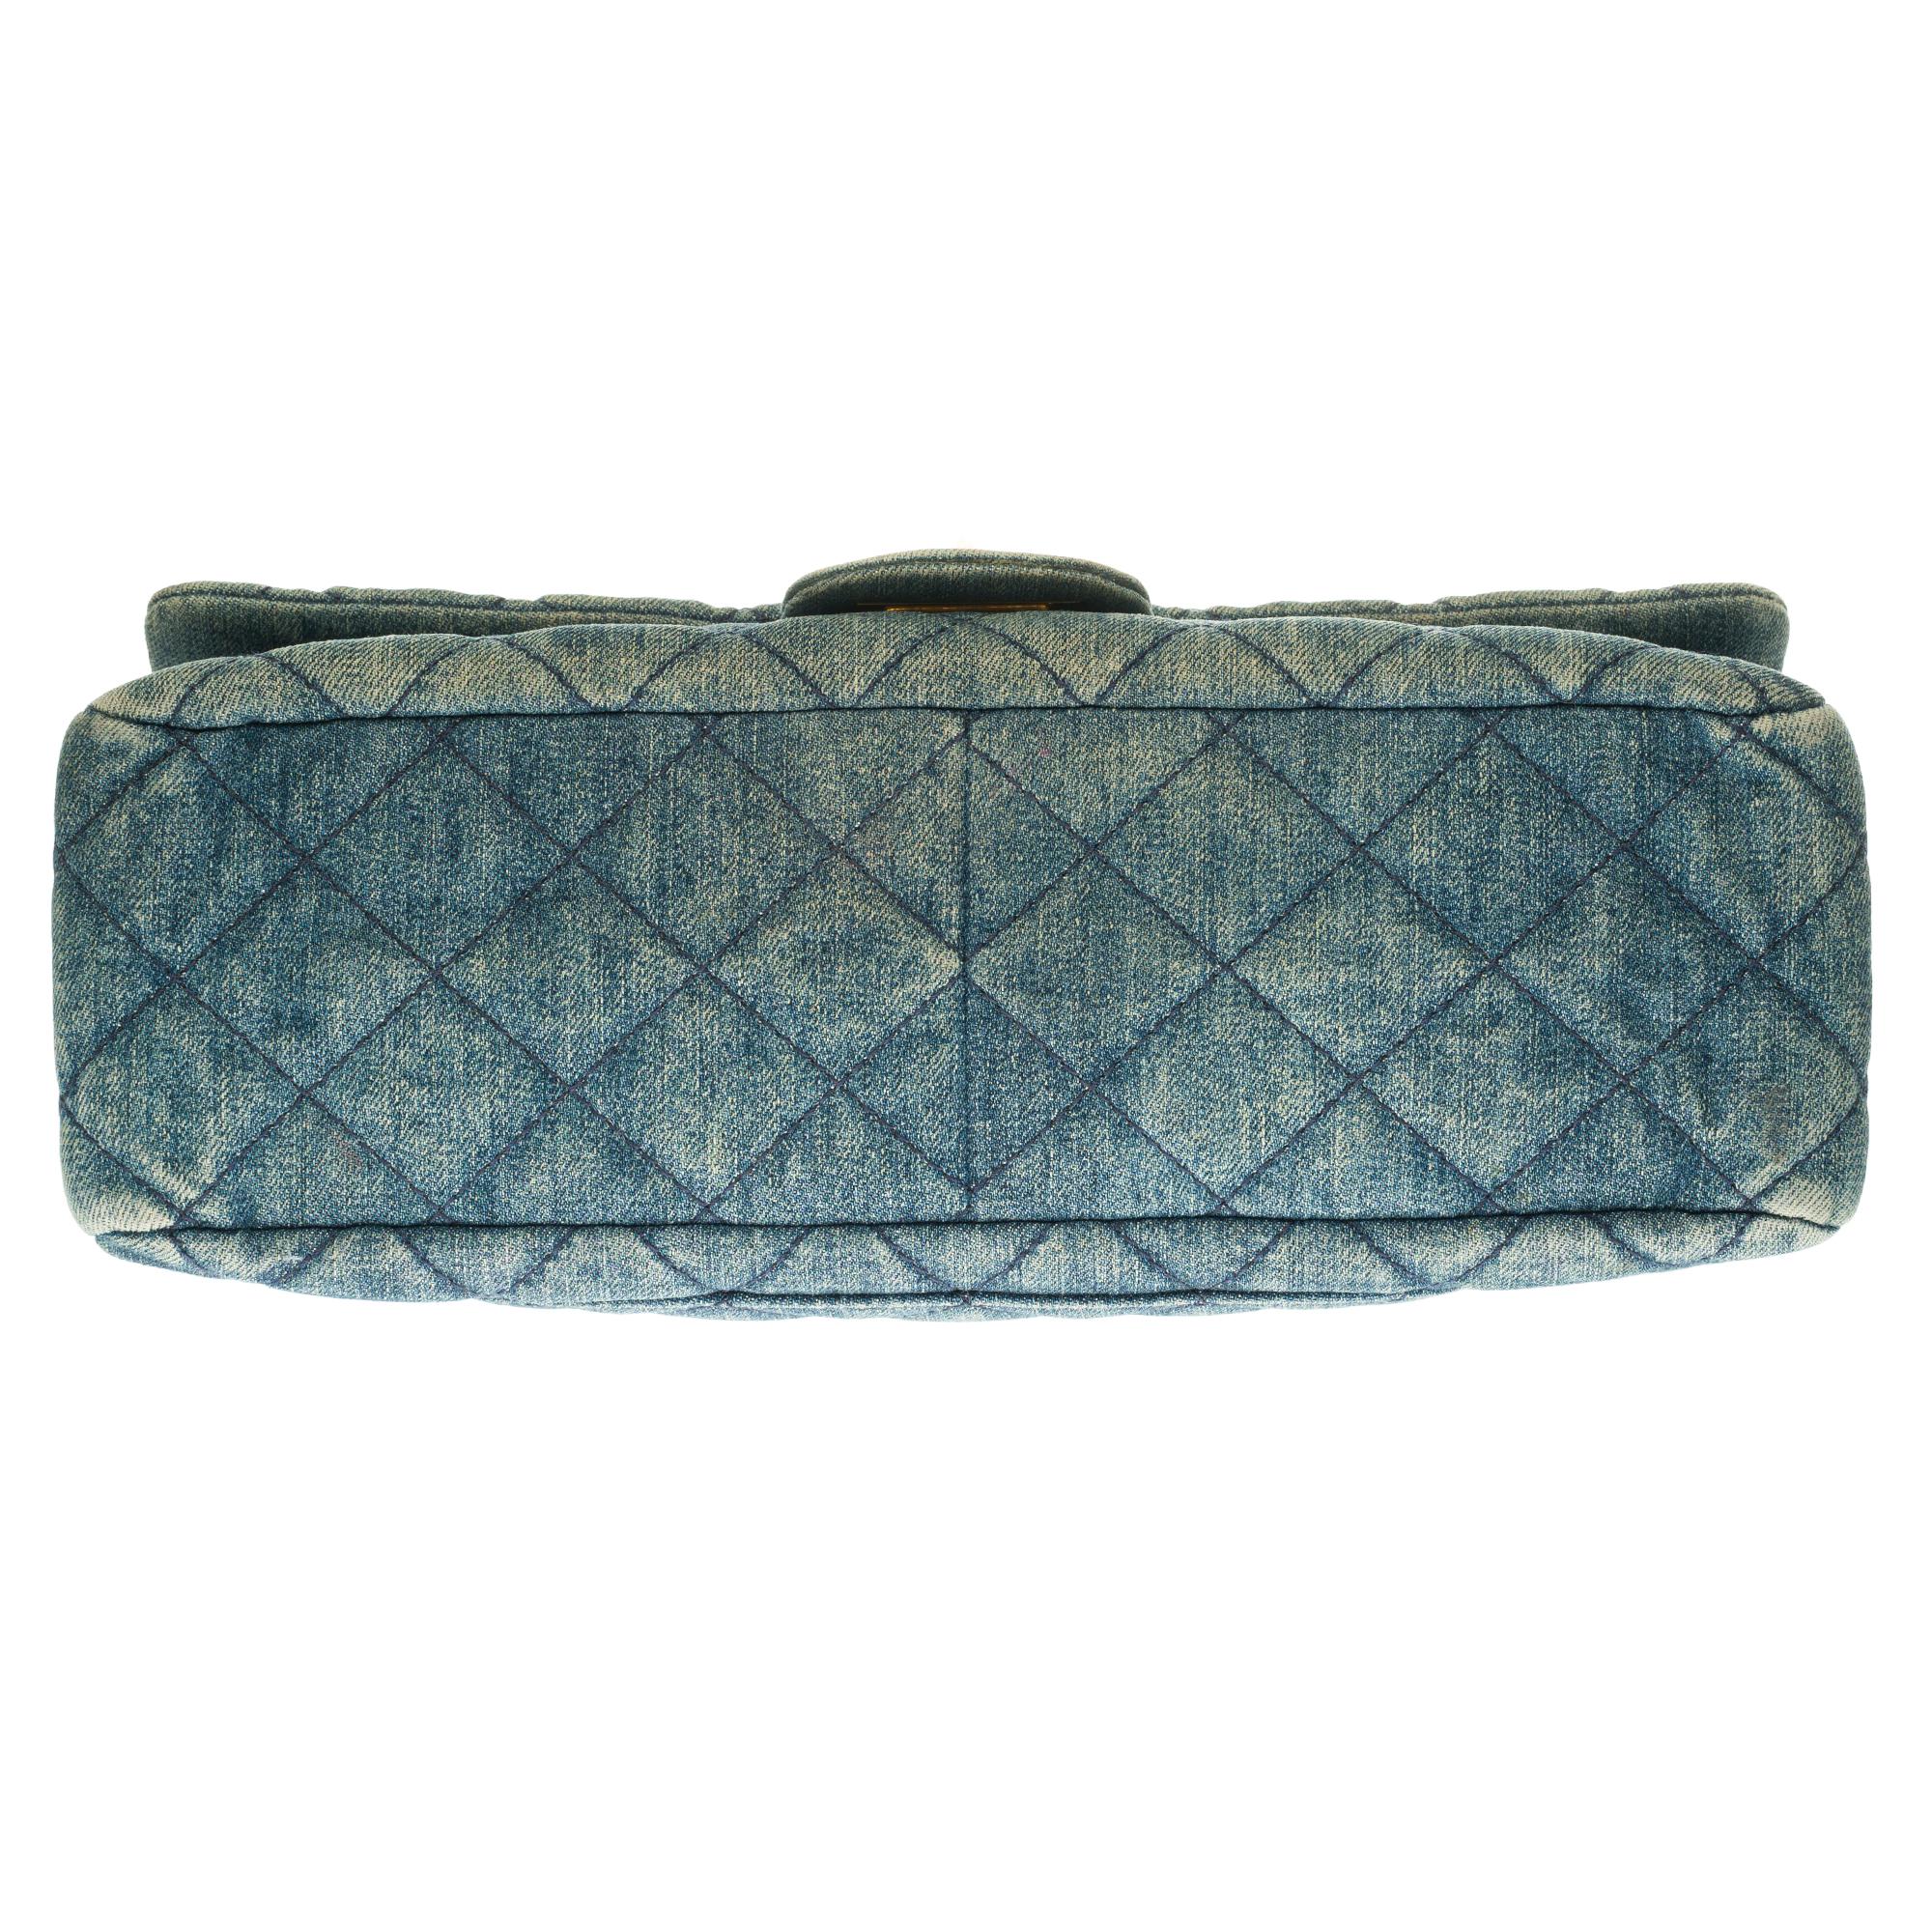 Chanel 2.55 Reissue 227 handbag in blue quilted denim with bronze hardware 1